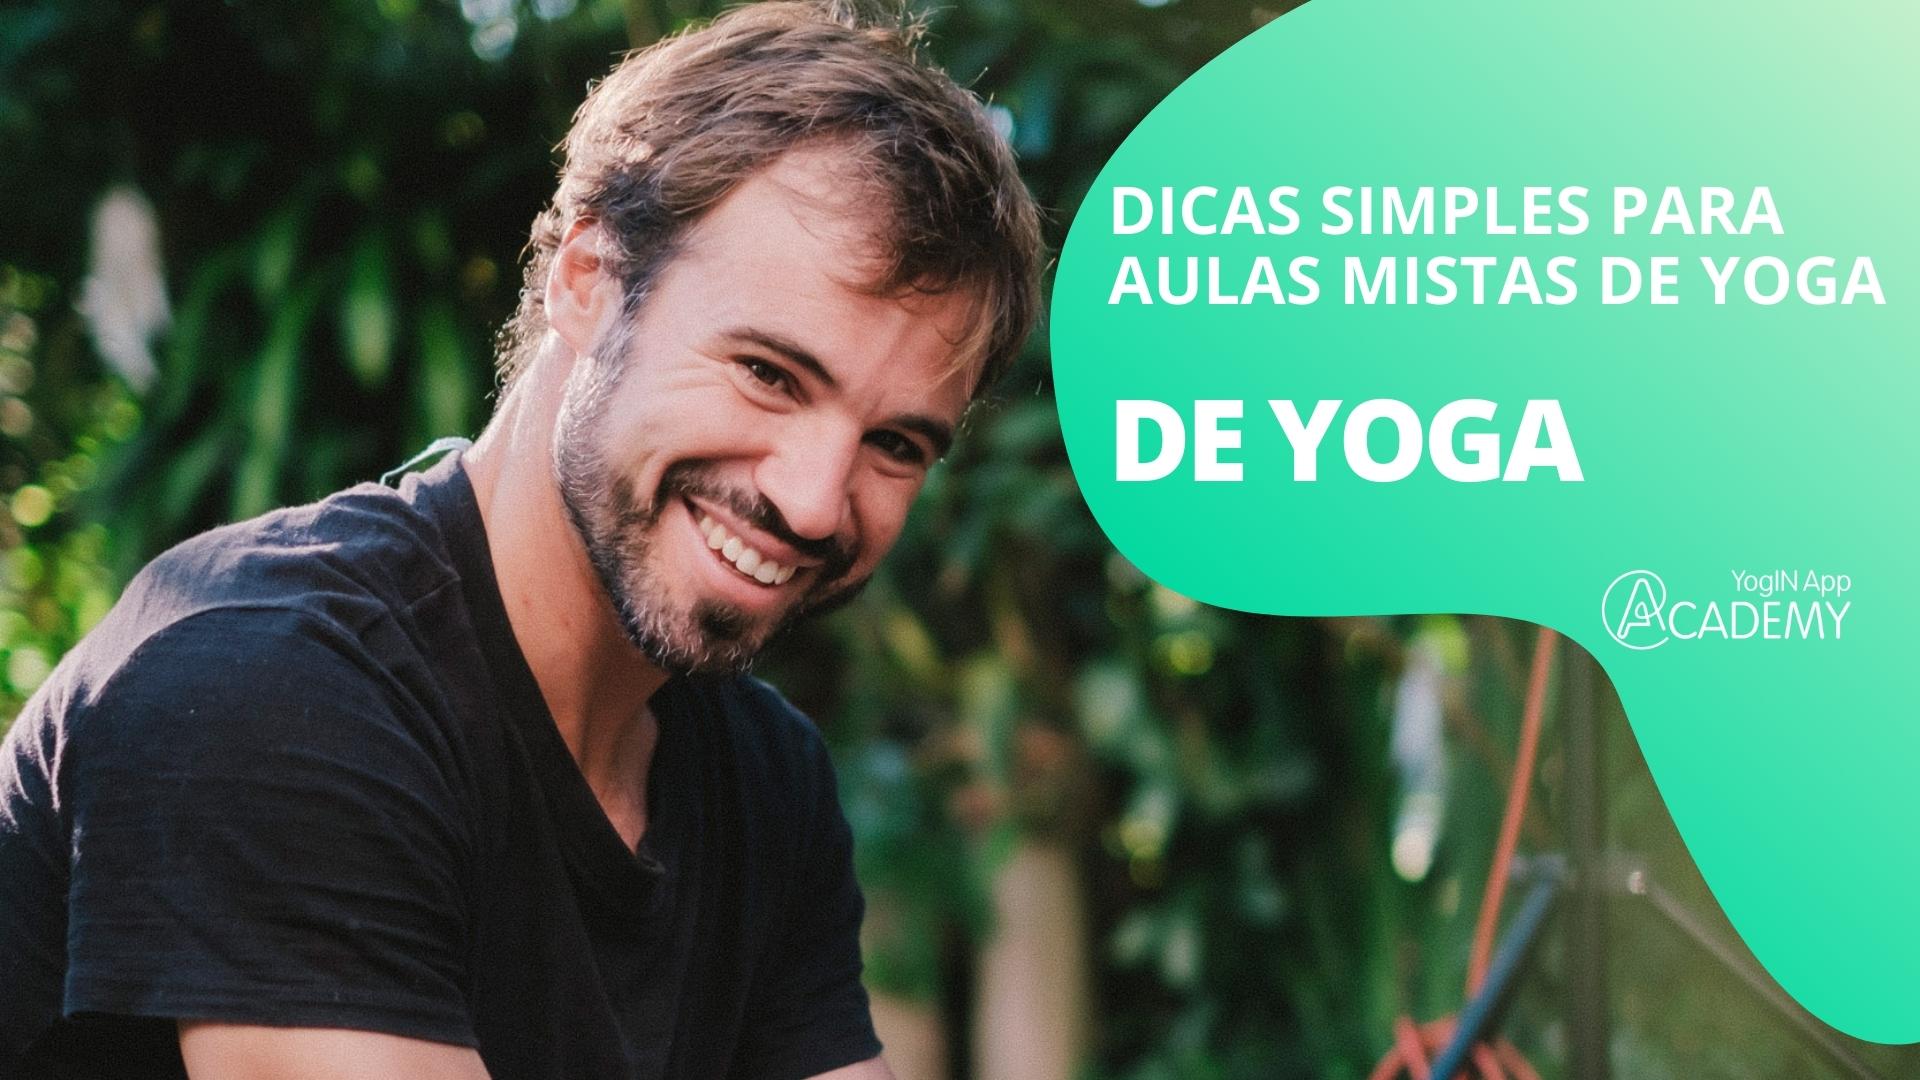 Dicas simples para aulas mistas de Yoga